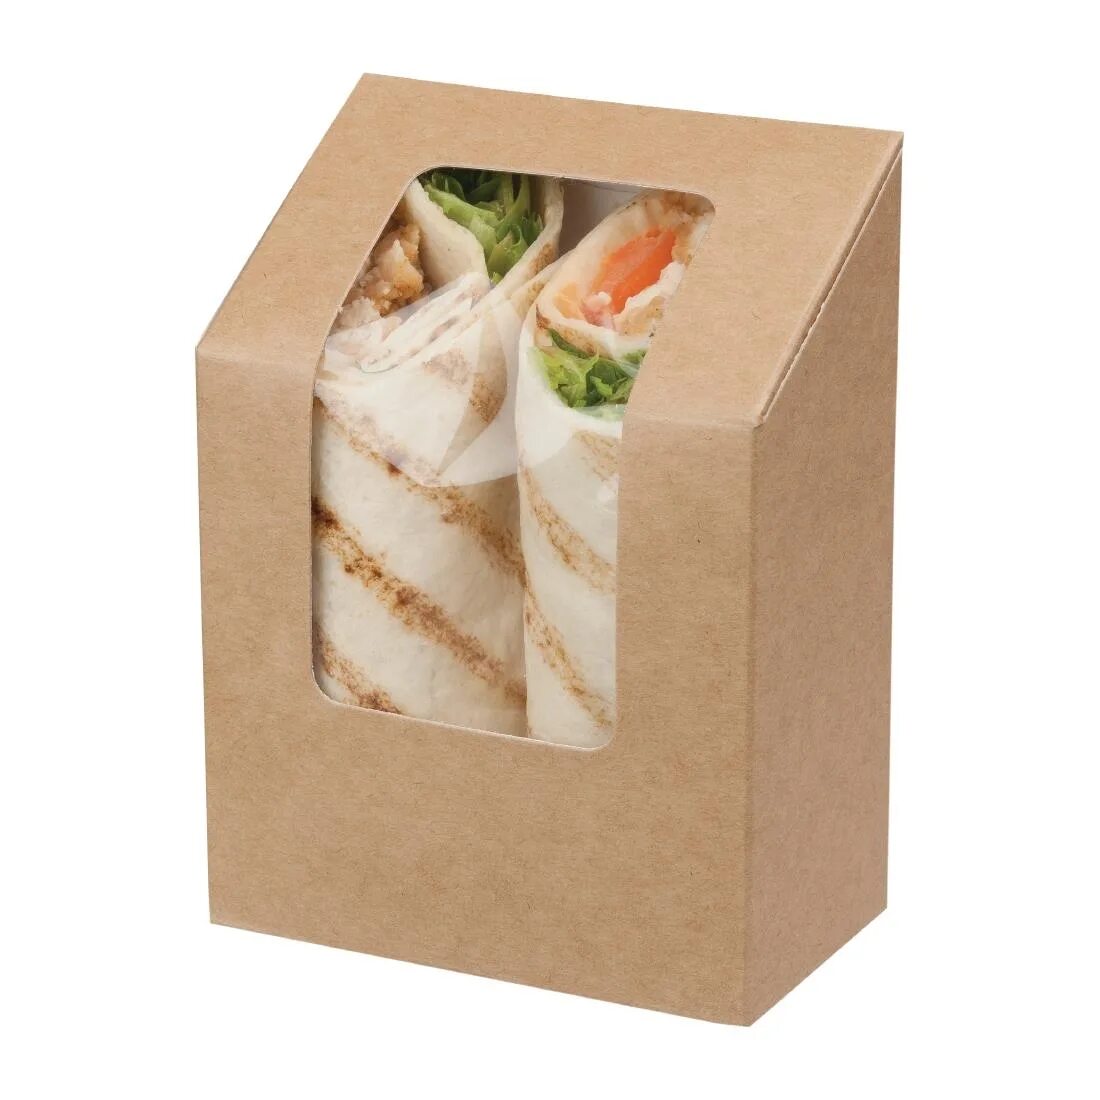 Сэндвич в упаковке. Коробка для сэндвичей. Красивая упаковка для сэндвичей. Крафтовая упаковка для сэндвичей. Ламинация коробки